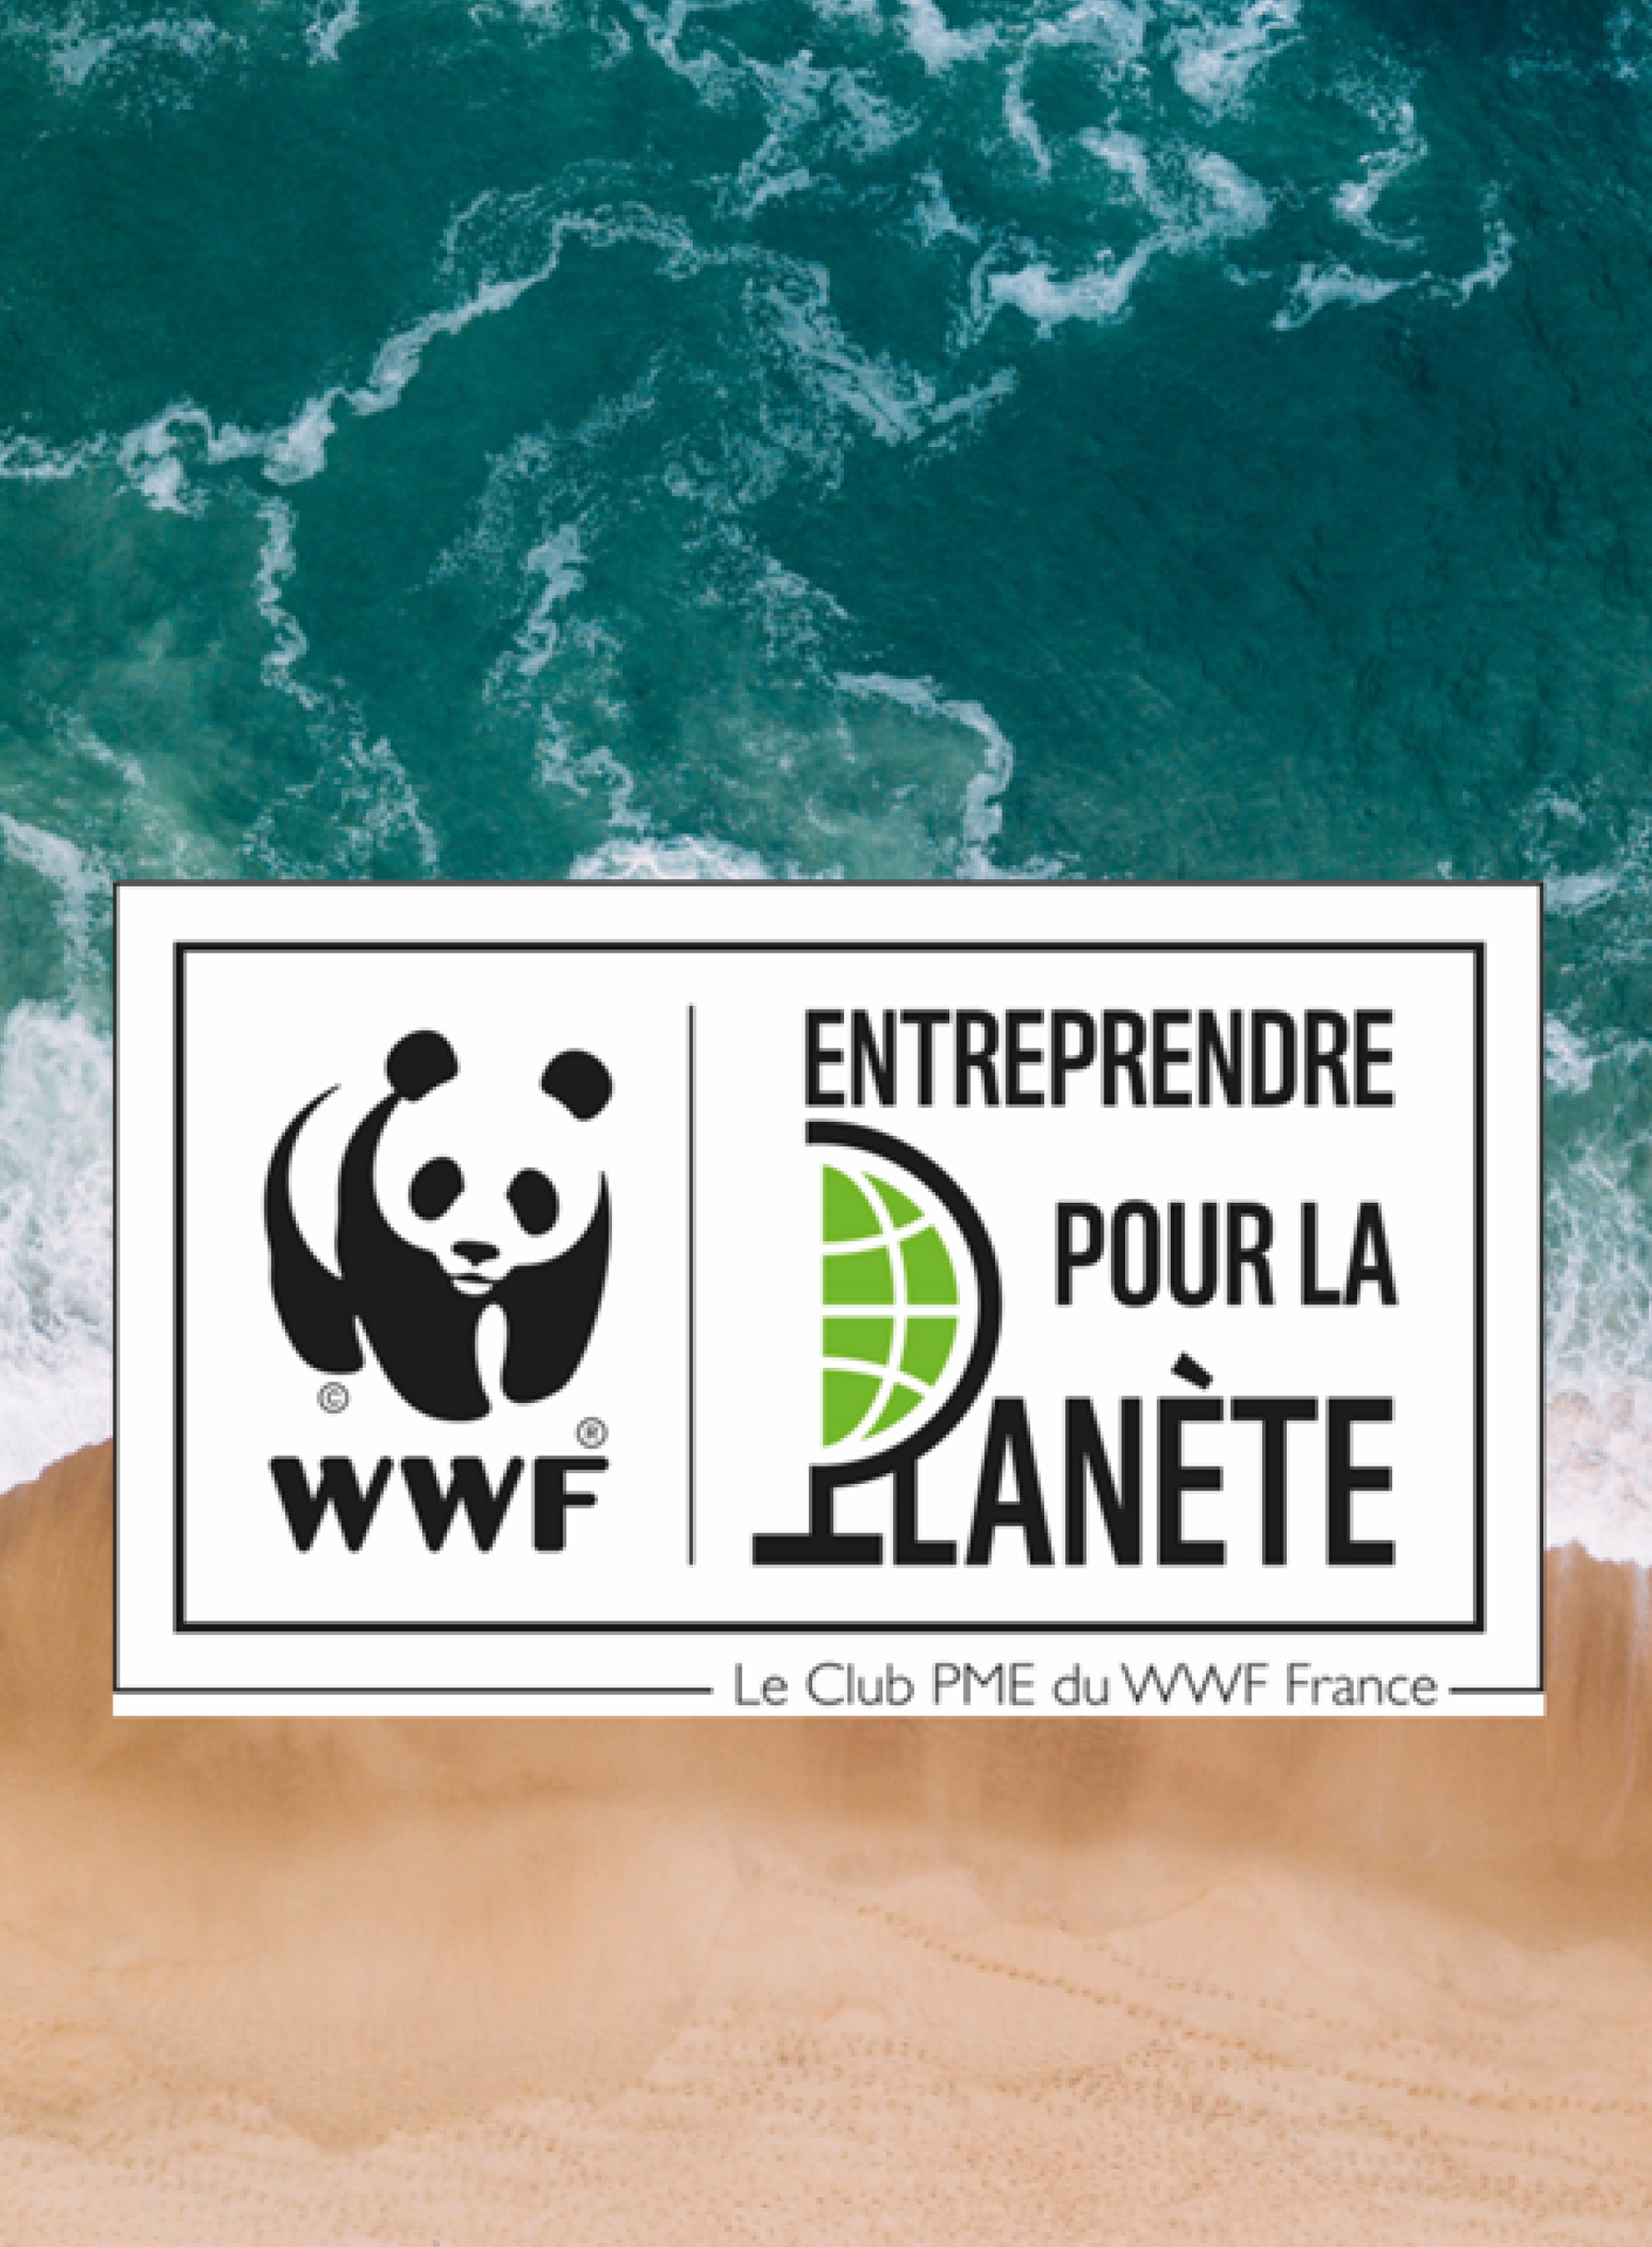 Les Petits Bidons engagés pour la planète, l'environnement et la biodiversité en devenant membre du Club Entreprendre pour la Planète WWF France ! Découvrez enfin une lessive naturelle engagée et vraiment propre pour vous et l'environnement.